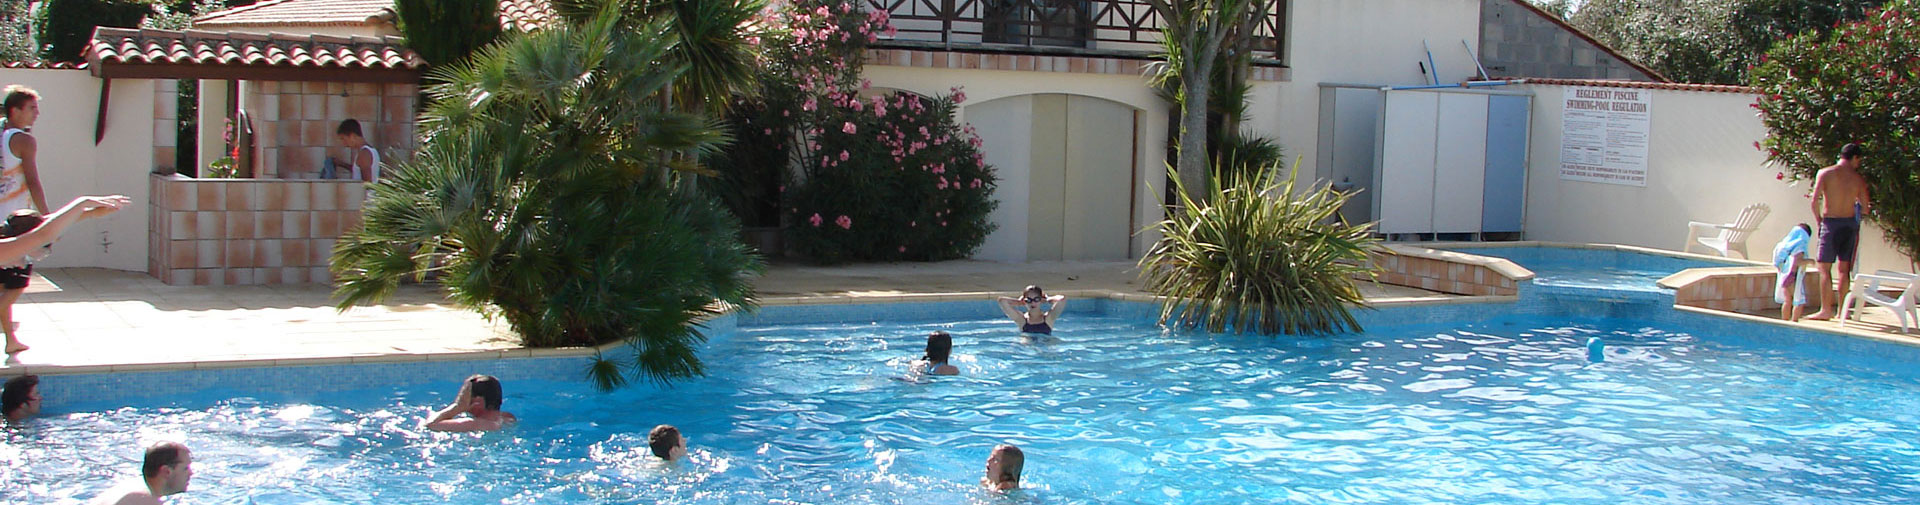 Ferienmiete von Zimmern auf der Insel Oléron für 2 Personen im Juli und August